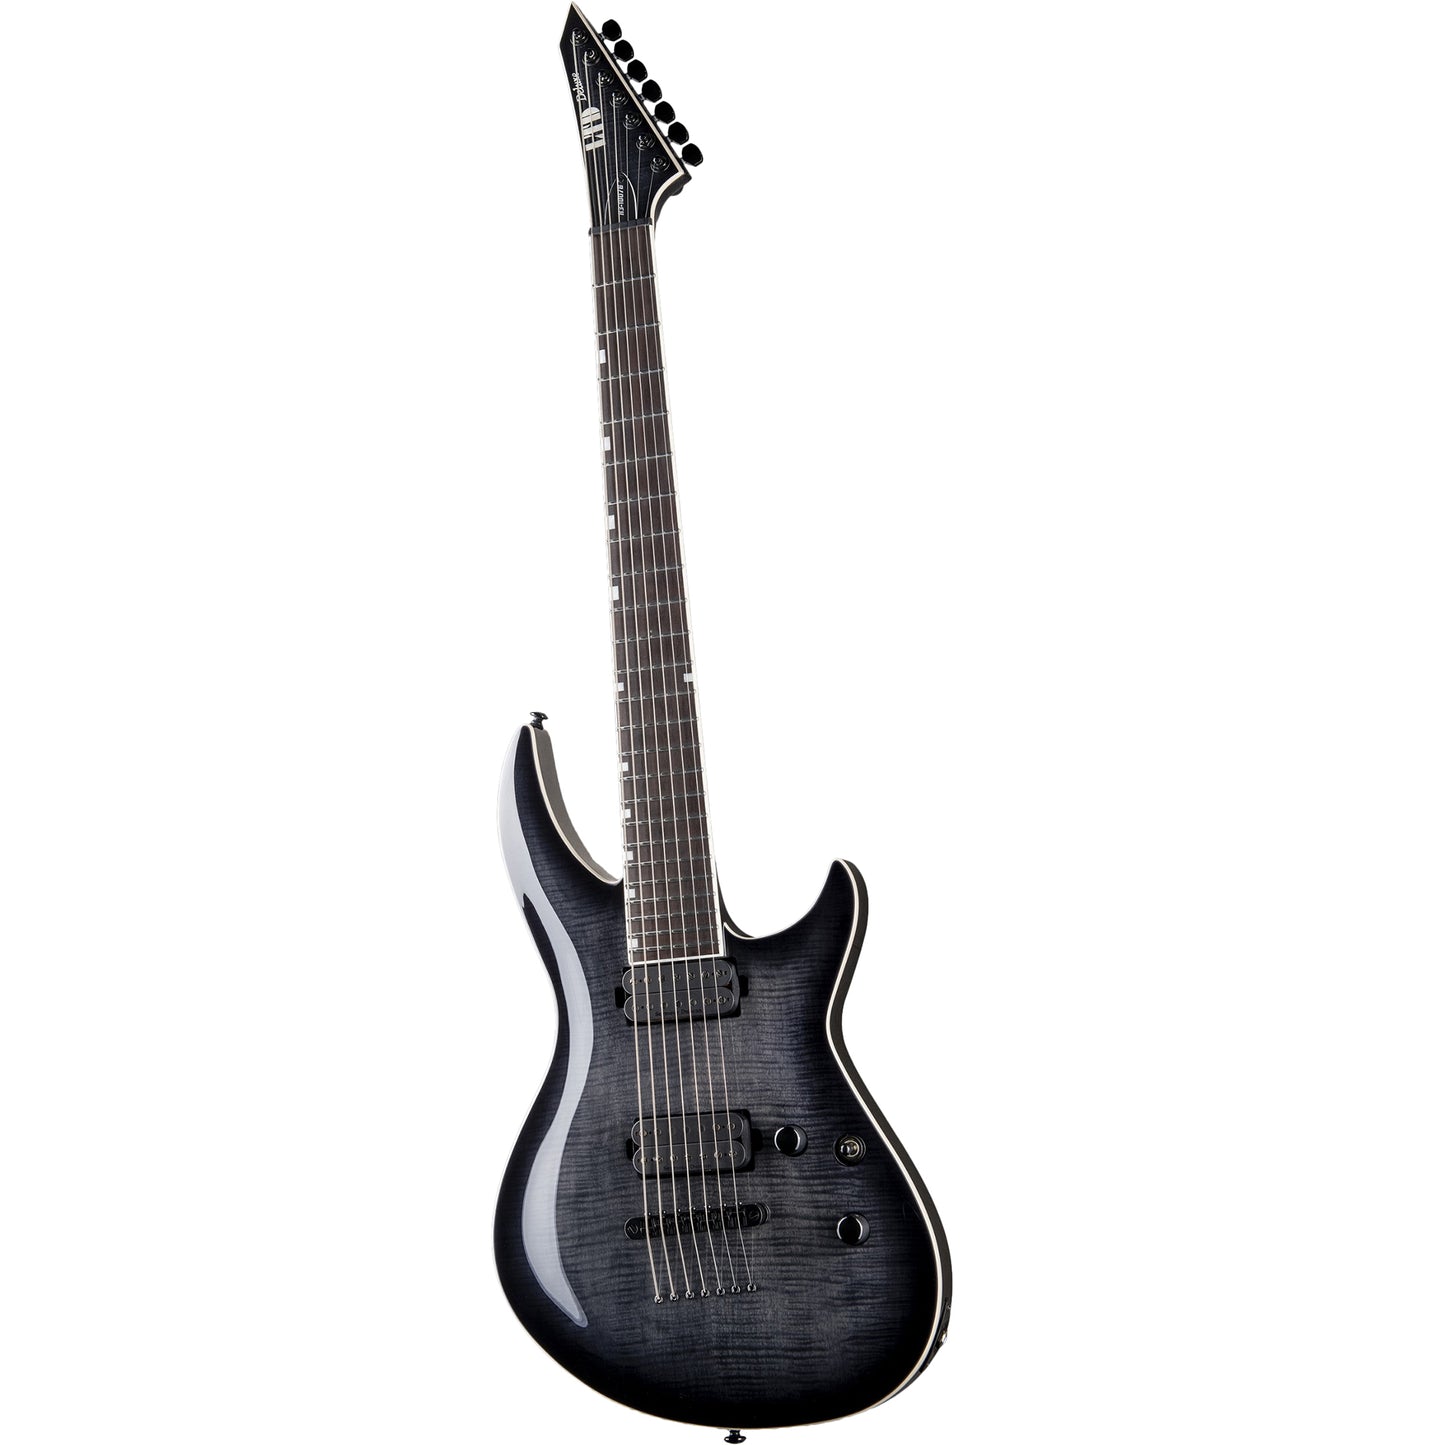 ESP LTD H3-1007 Baritone Electric Guitar, See Thru Black Sunburst